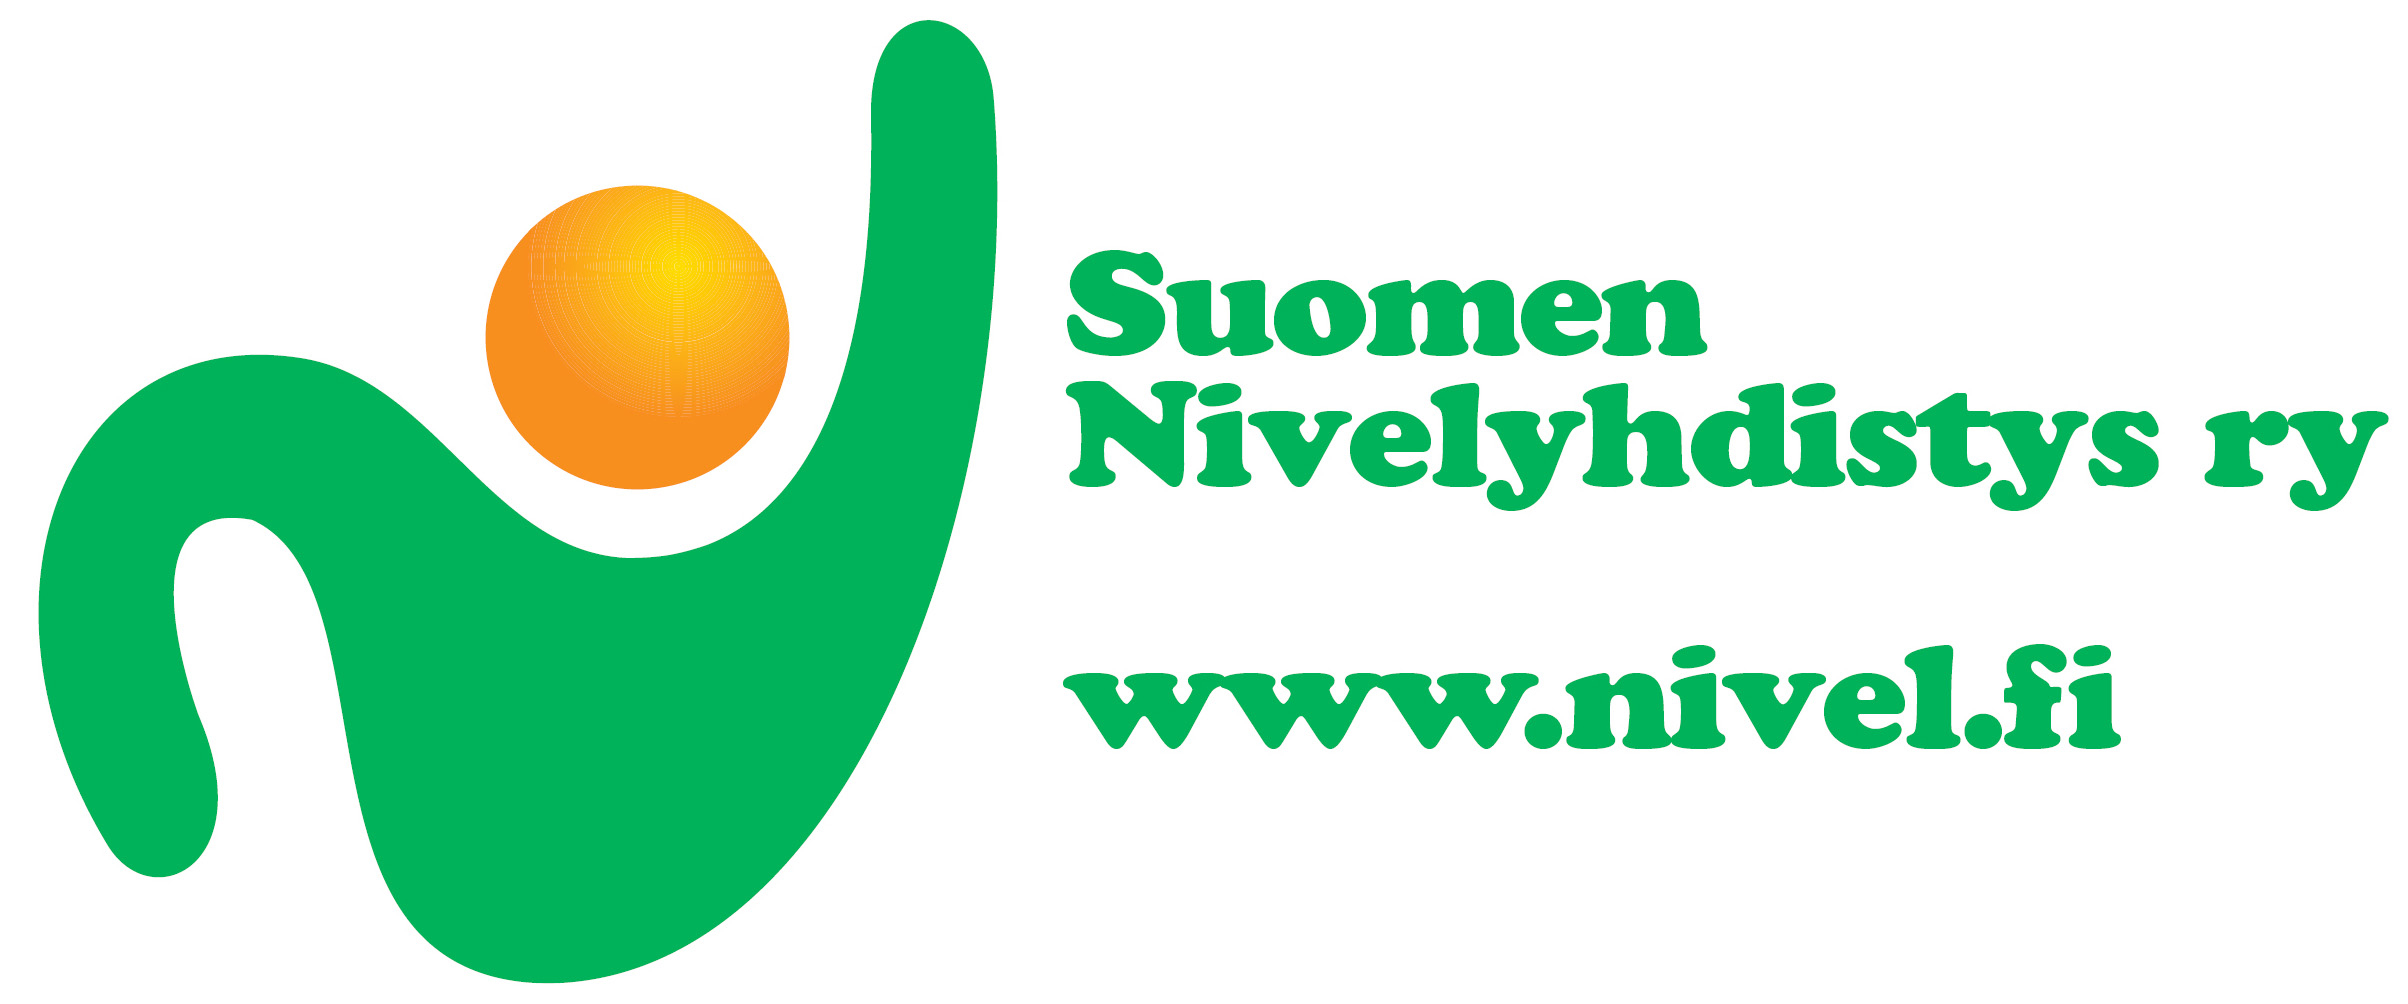 Jrjestn Kuopion Nivelpiiri, Suomen Nivelyhdistys ry logo